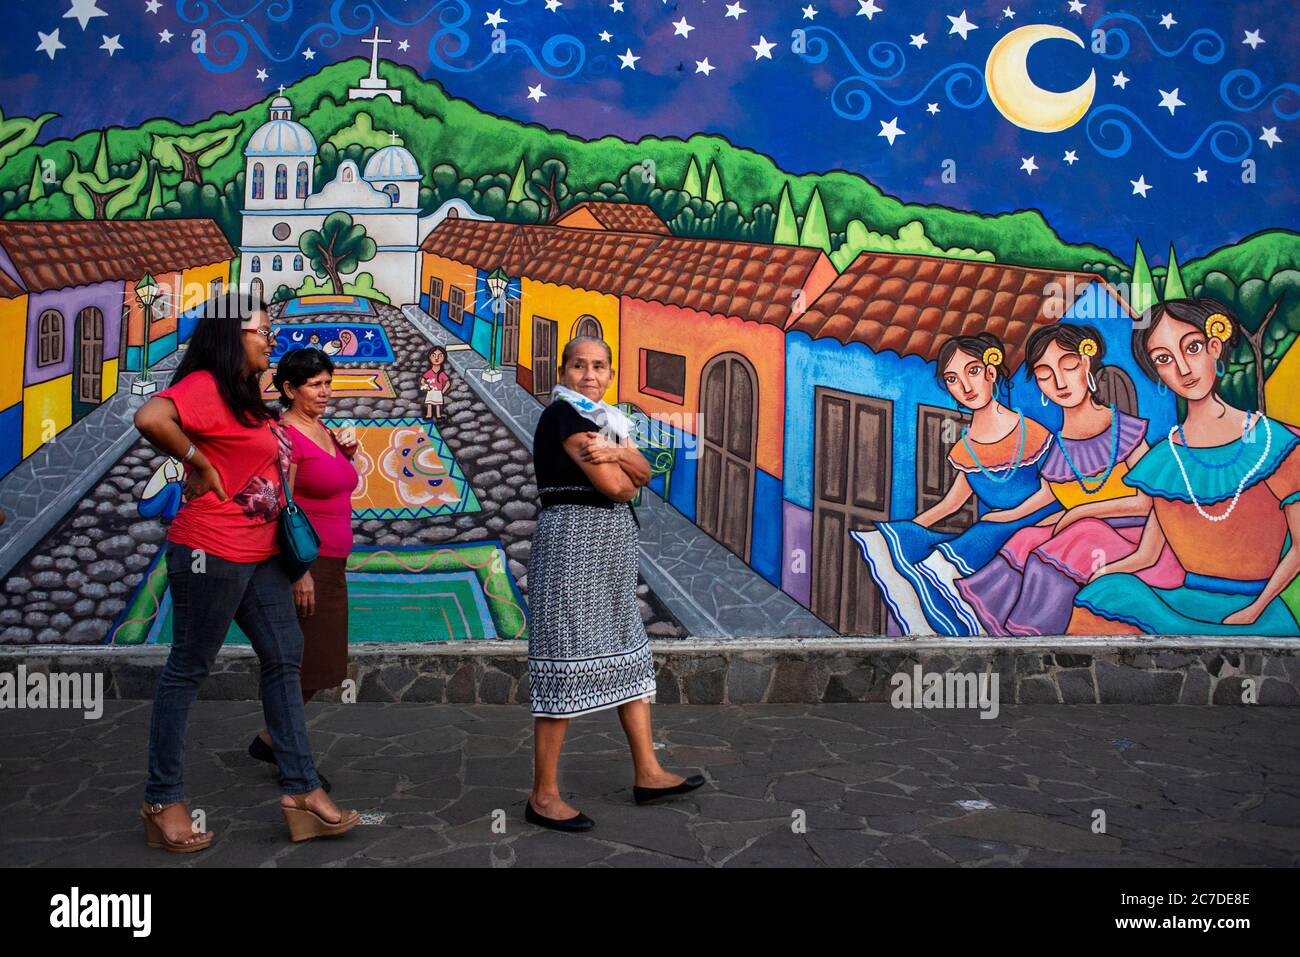 Mur rue art graffiti à Concepción de Ataco département d'Ahuachapán El Salvador Amérique centrale. Ruta de Las Flores, département d'Ahuachapan Banque D'Images